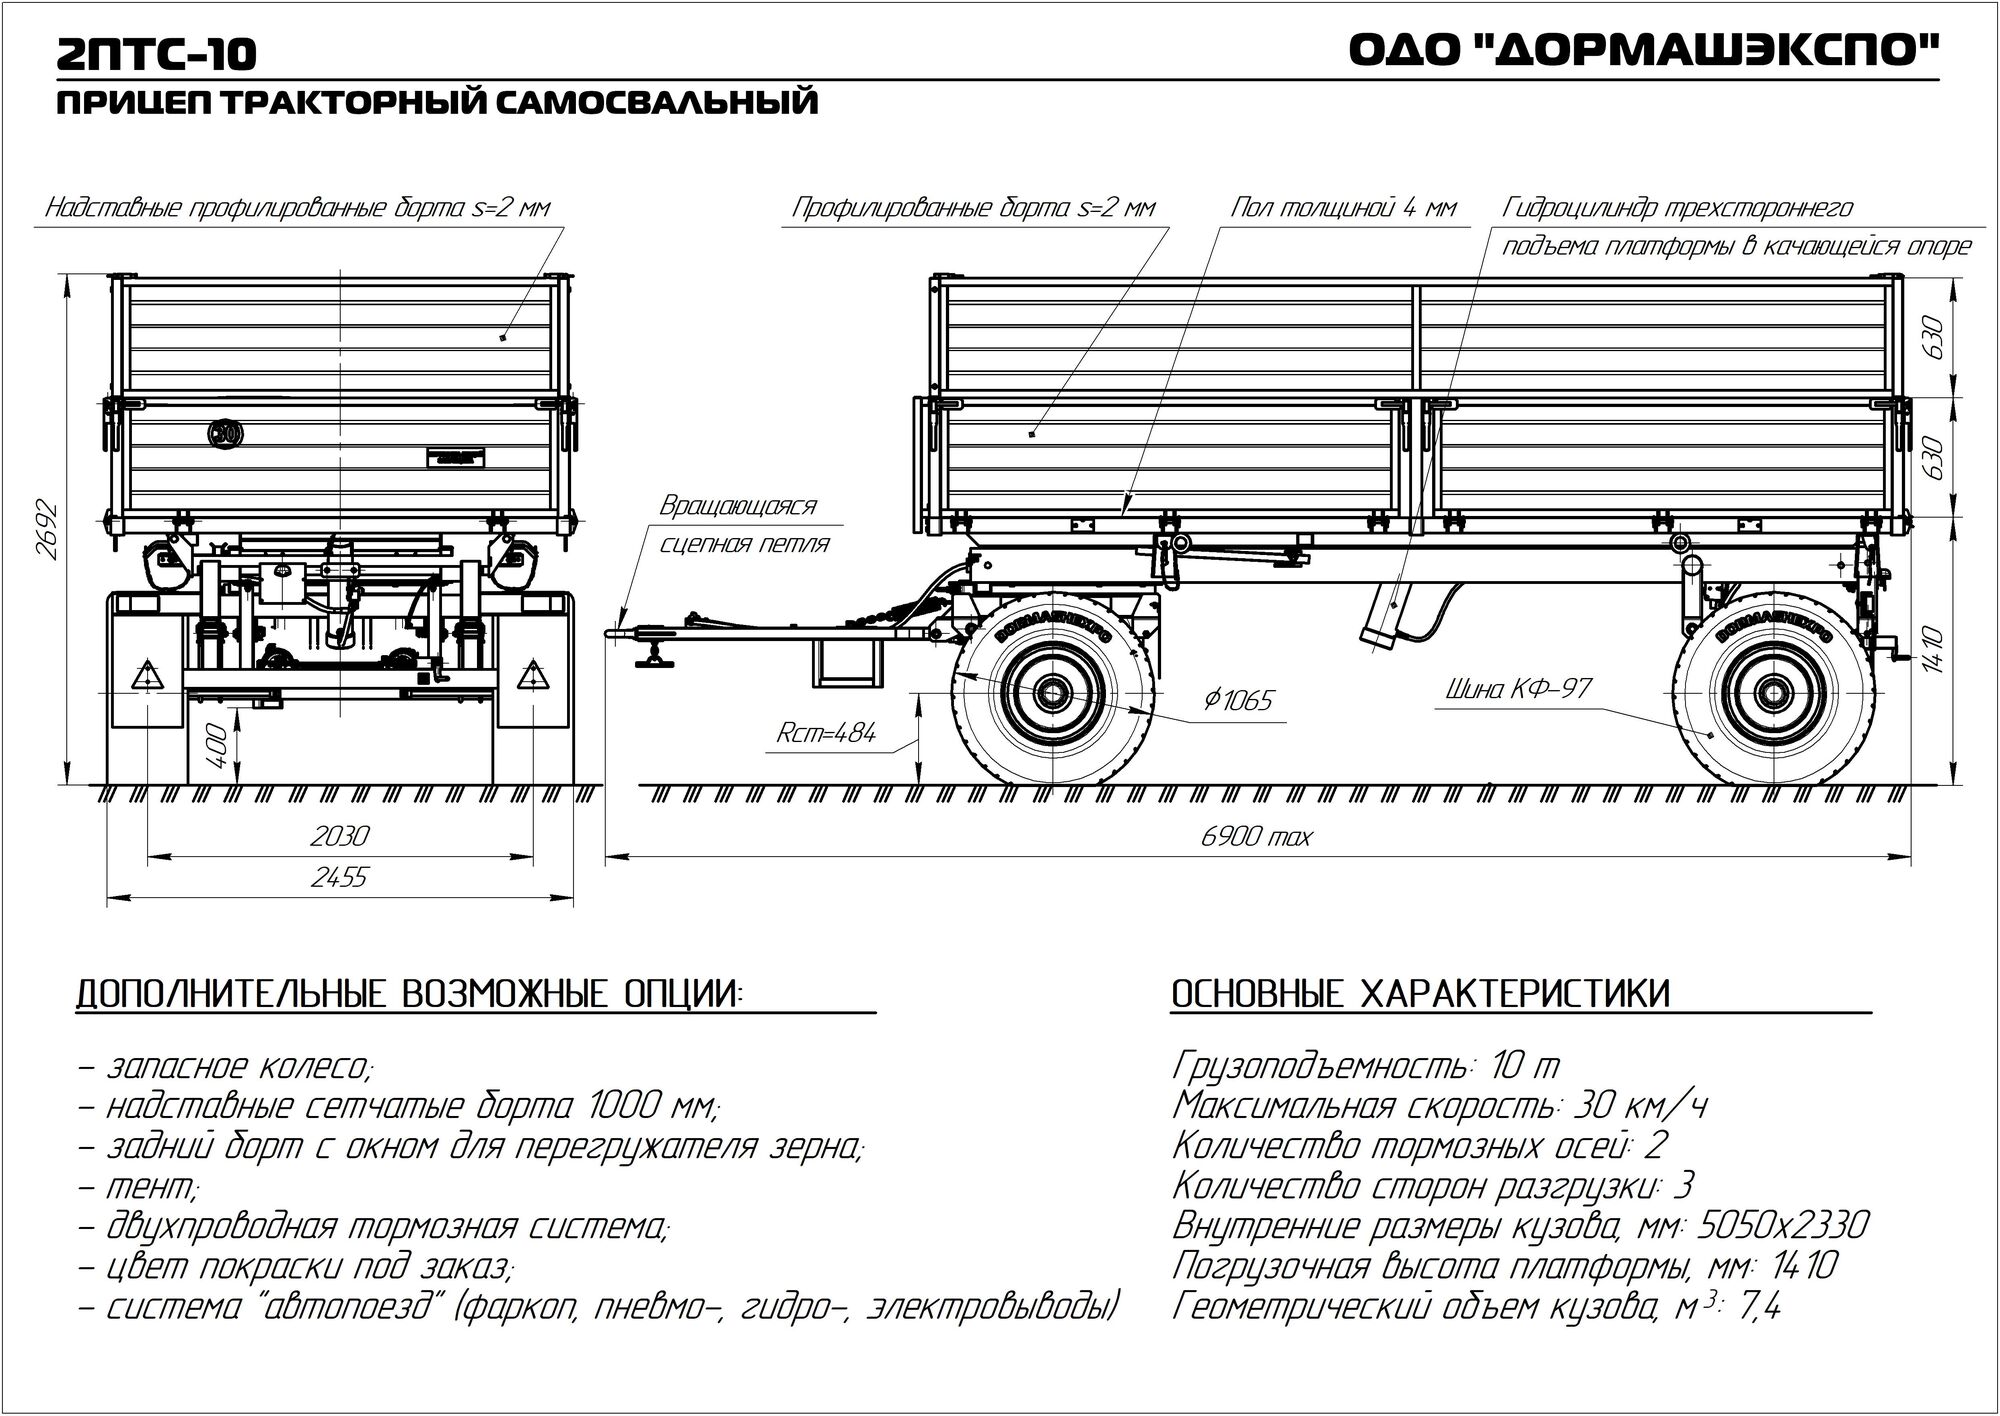 Прицеп тракторный самосвальный 2ПТС-10 4